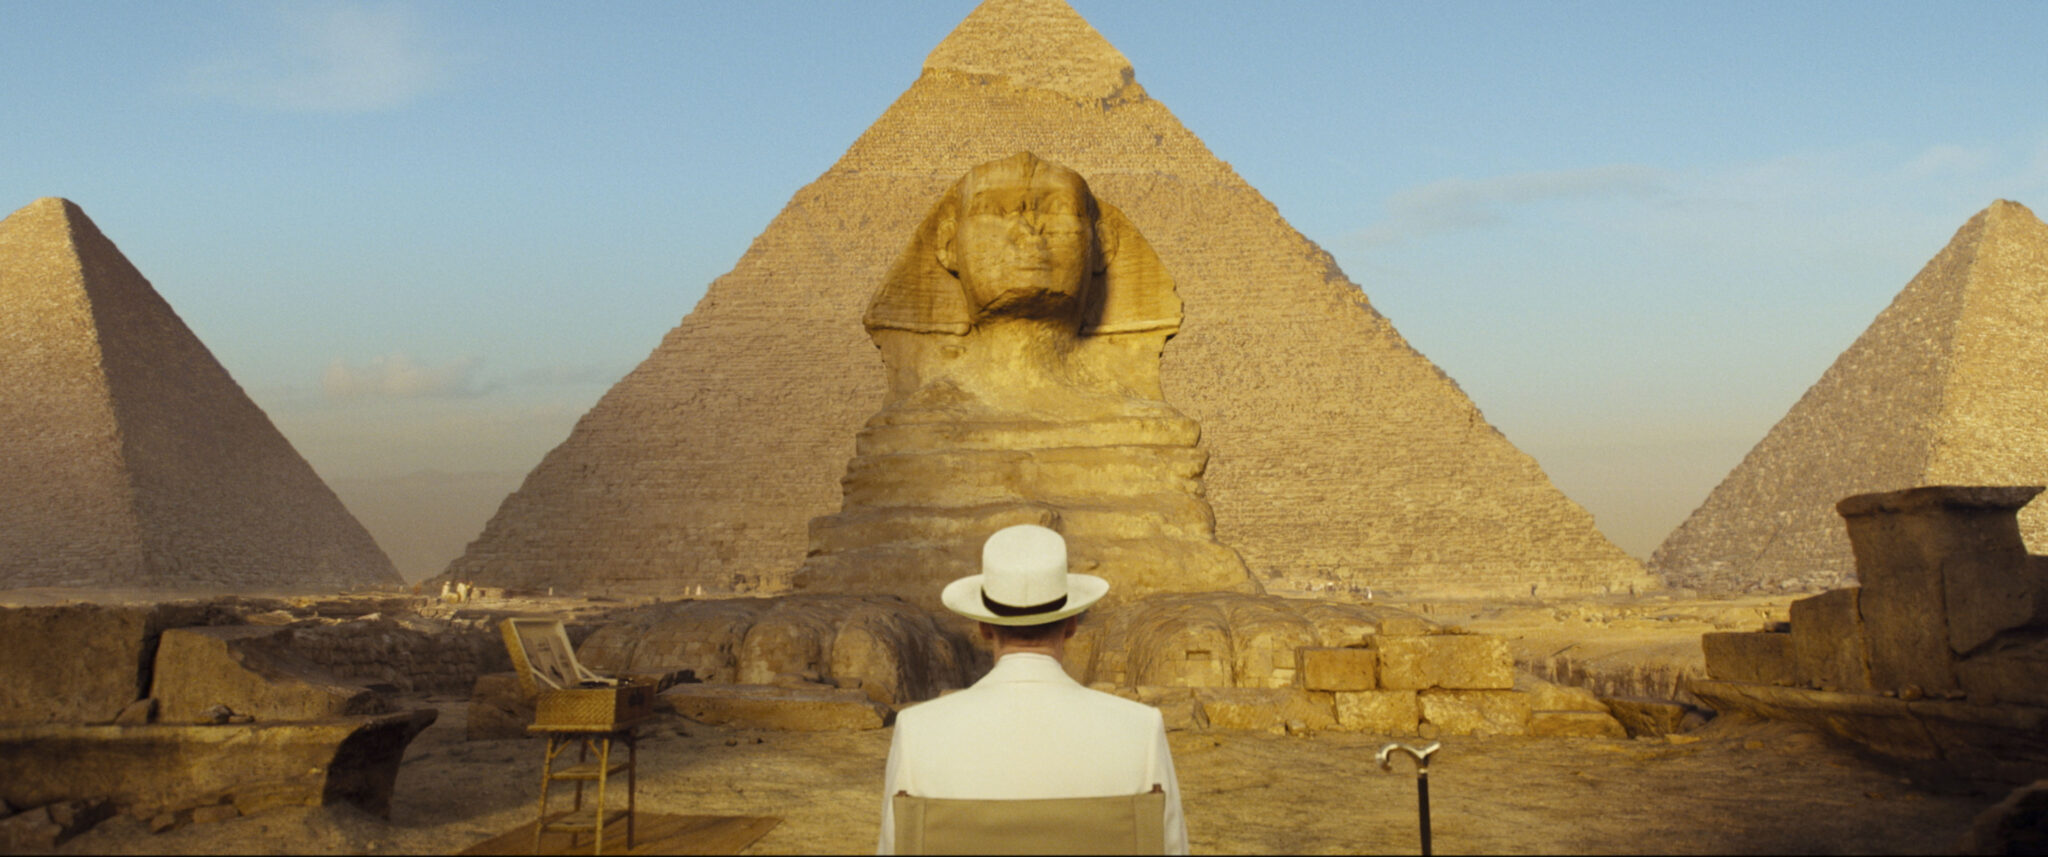 Kenneth Branagh sitzt abgewandt auf einem Stuhl. Er sieht in die Ferne und betrachtet die Pyramiden, die den Großteil des Bilds ausmachen - Tod auf dem Nil